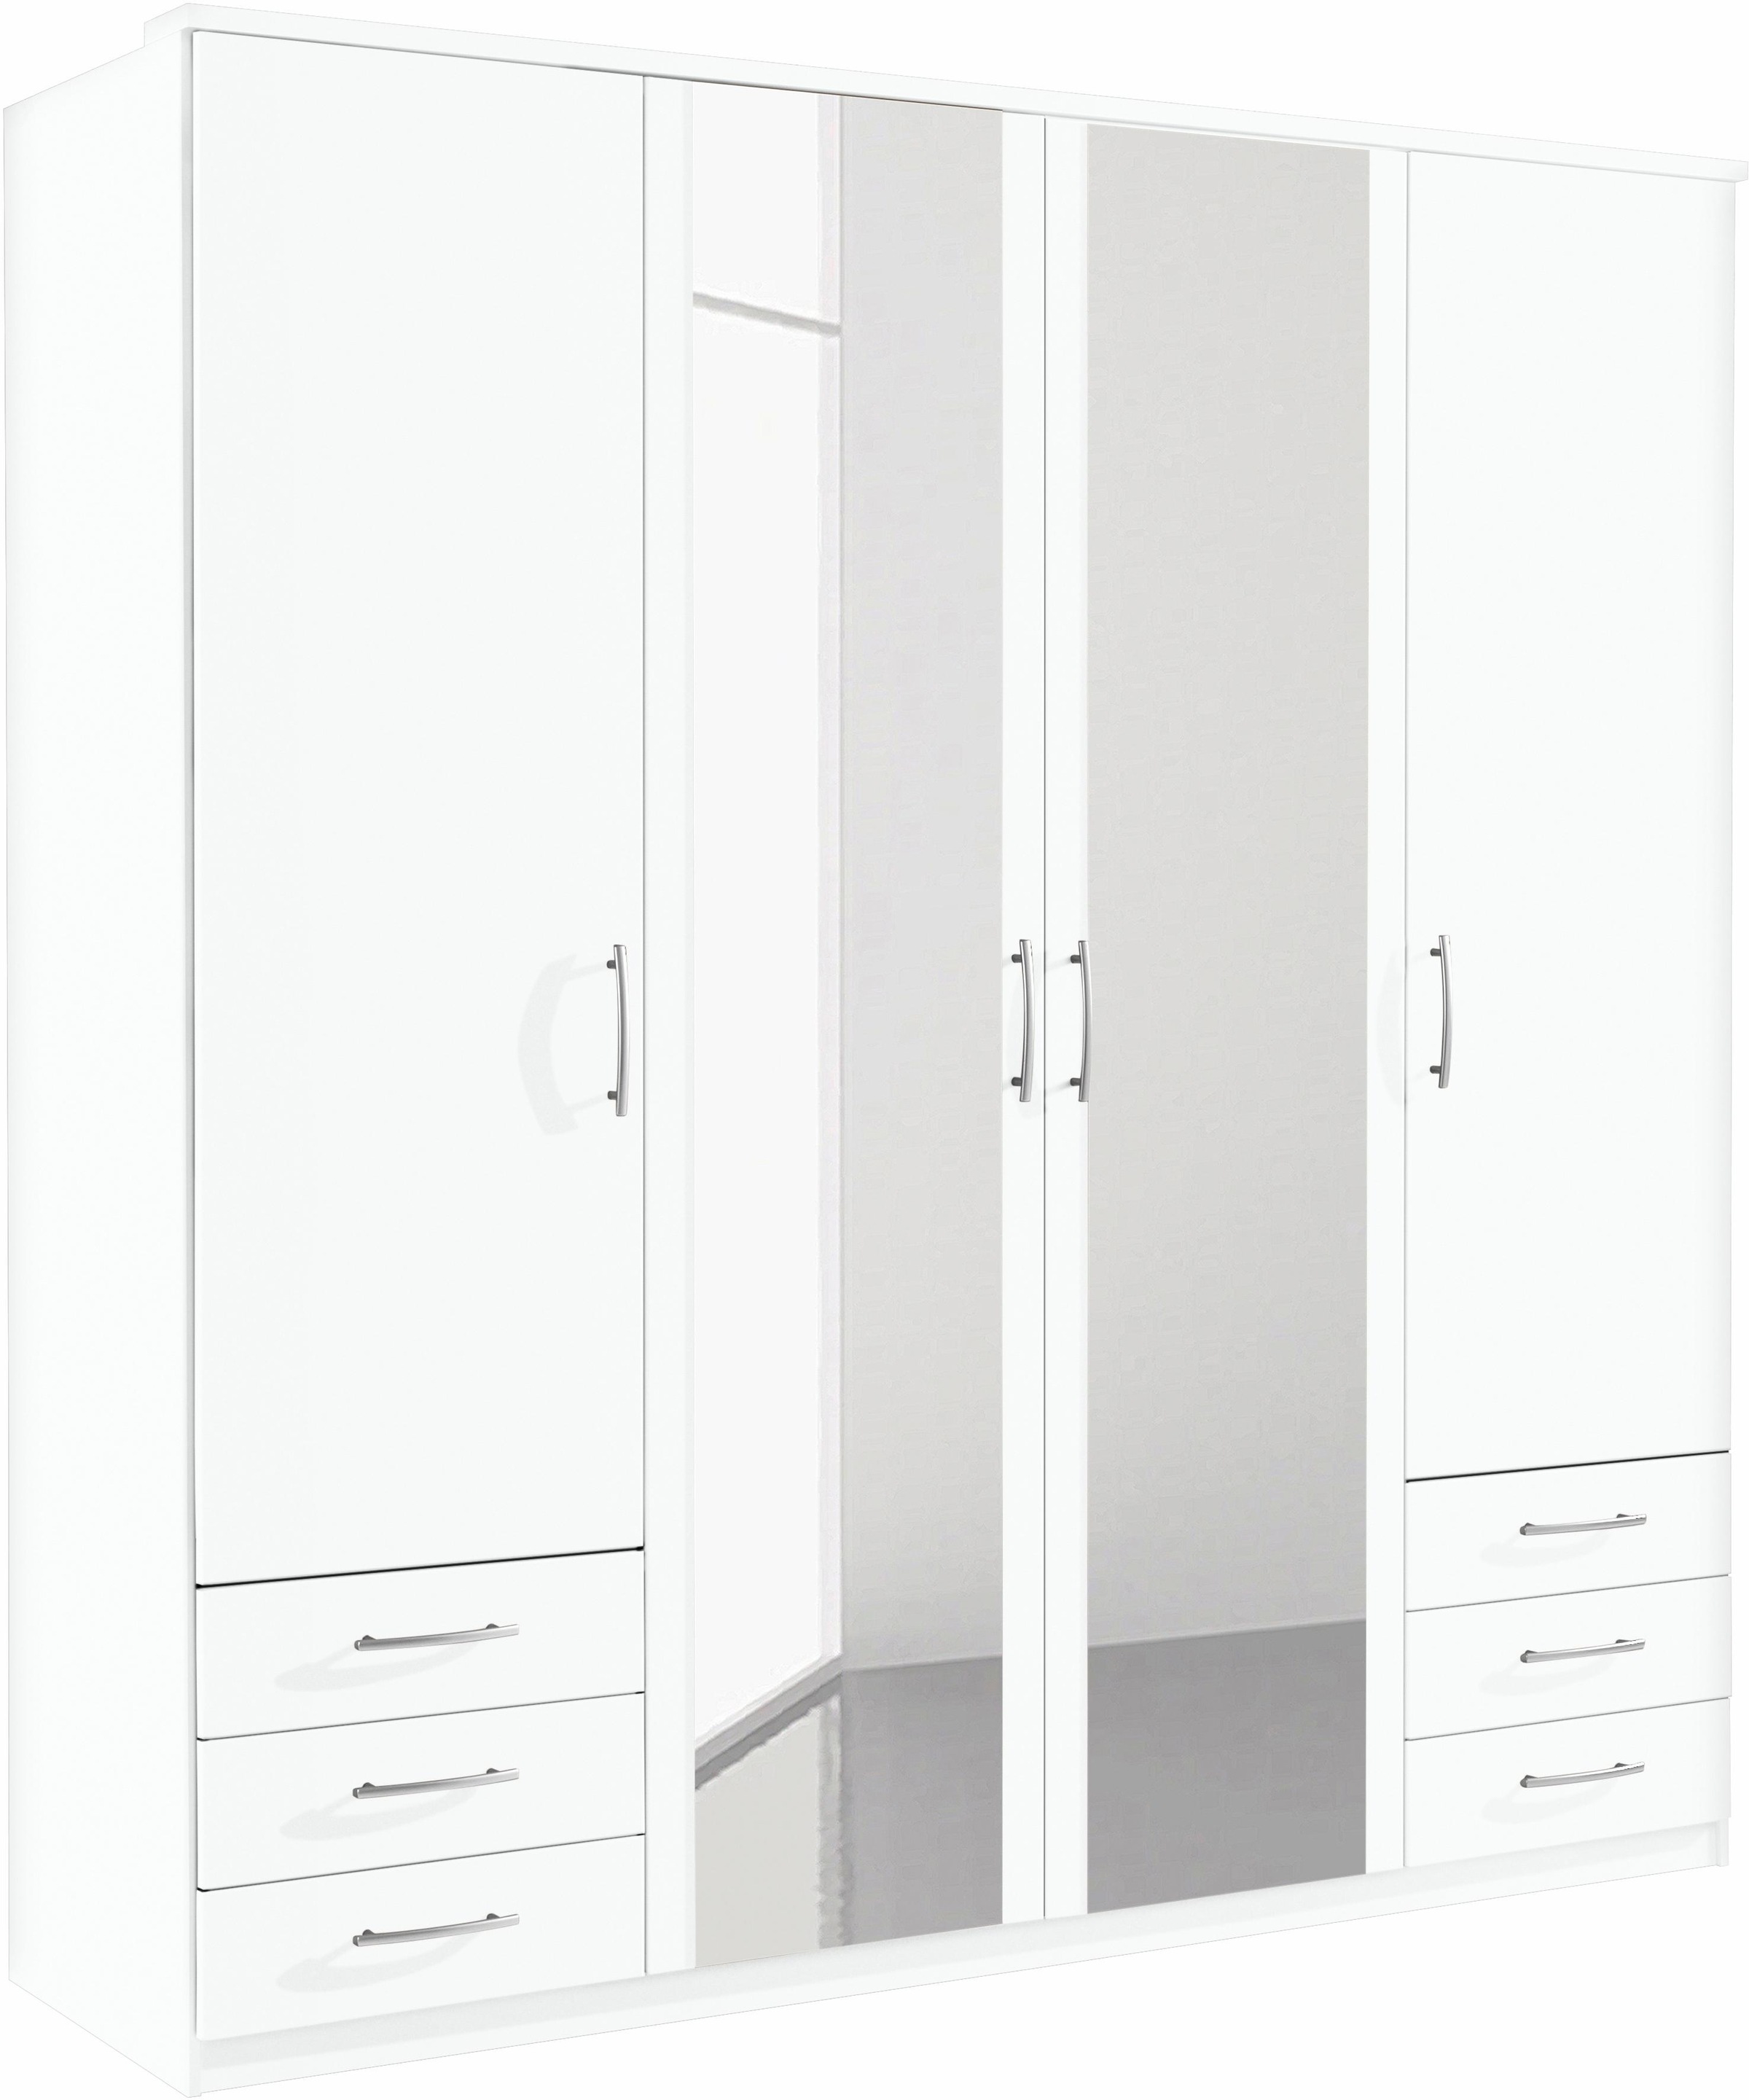 Preisvergleich für priess Kleiderschrank Husum, BxHxT 185x57x196 cm, in der  Farbe Weiß | Ladendirekt